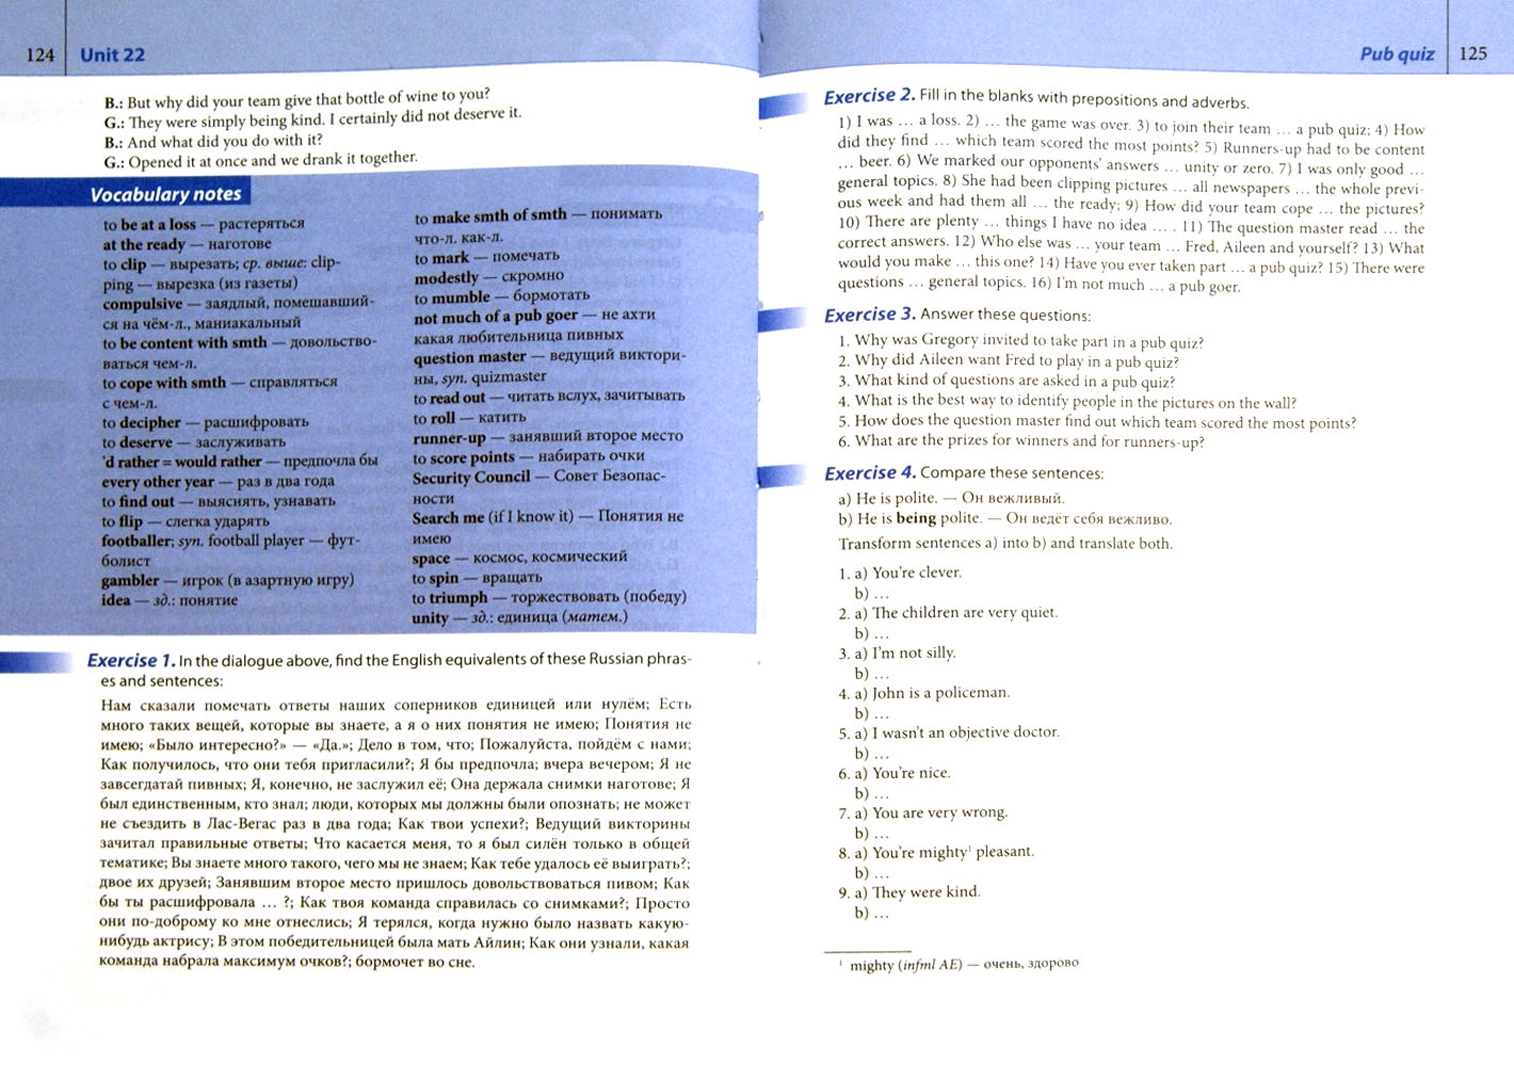 Иллюстрация 1 из 9 для Разговорный английский. Английские нравы и обычаи (+СD) - Григорий Вейхман | Лабиринт - книги. Источник: Лабиринт